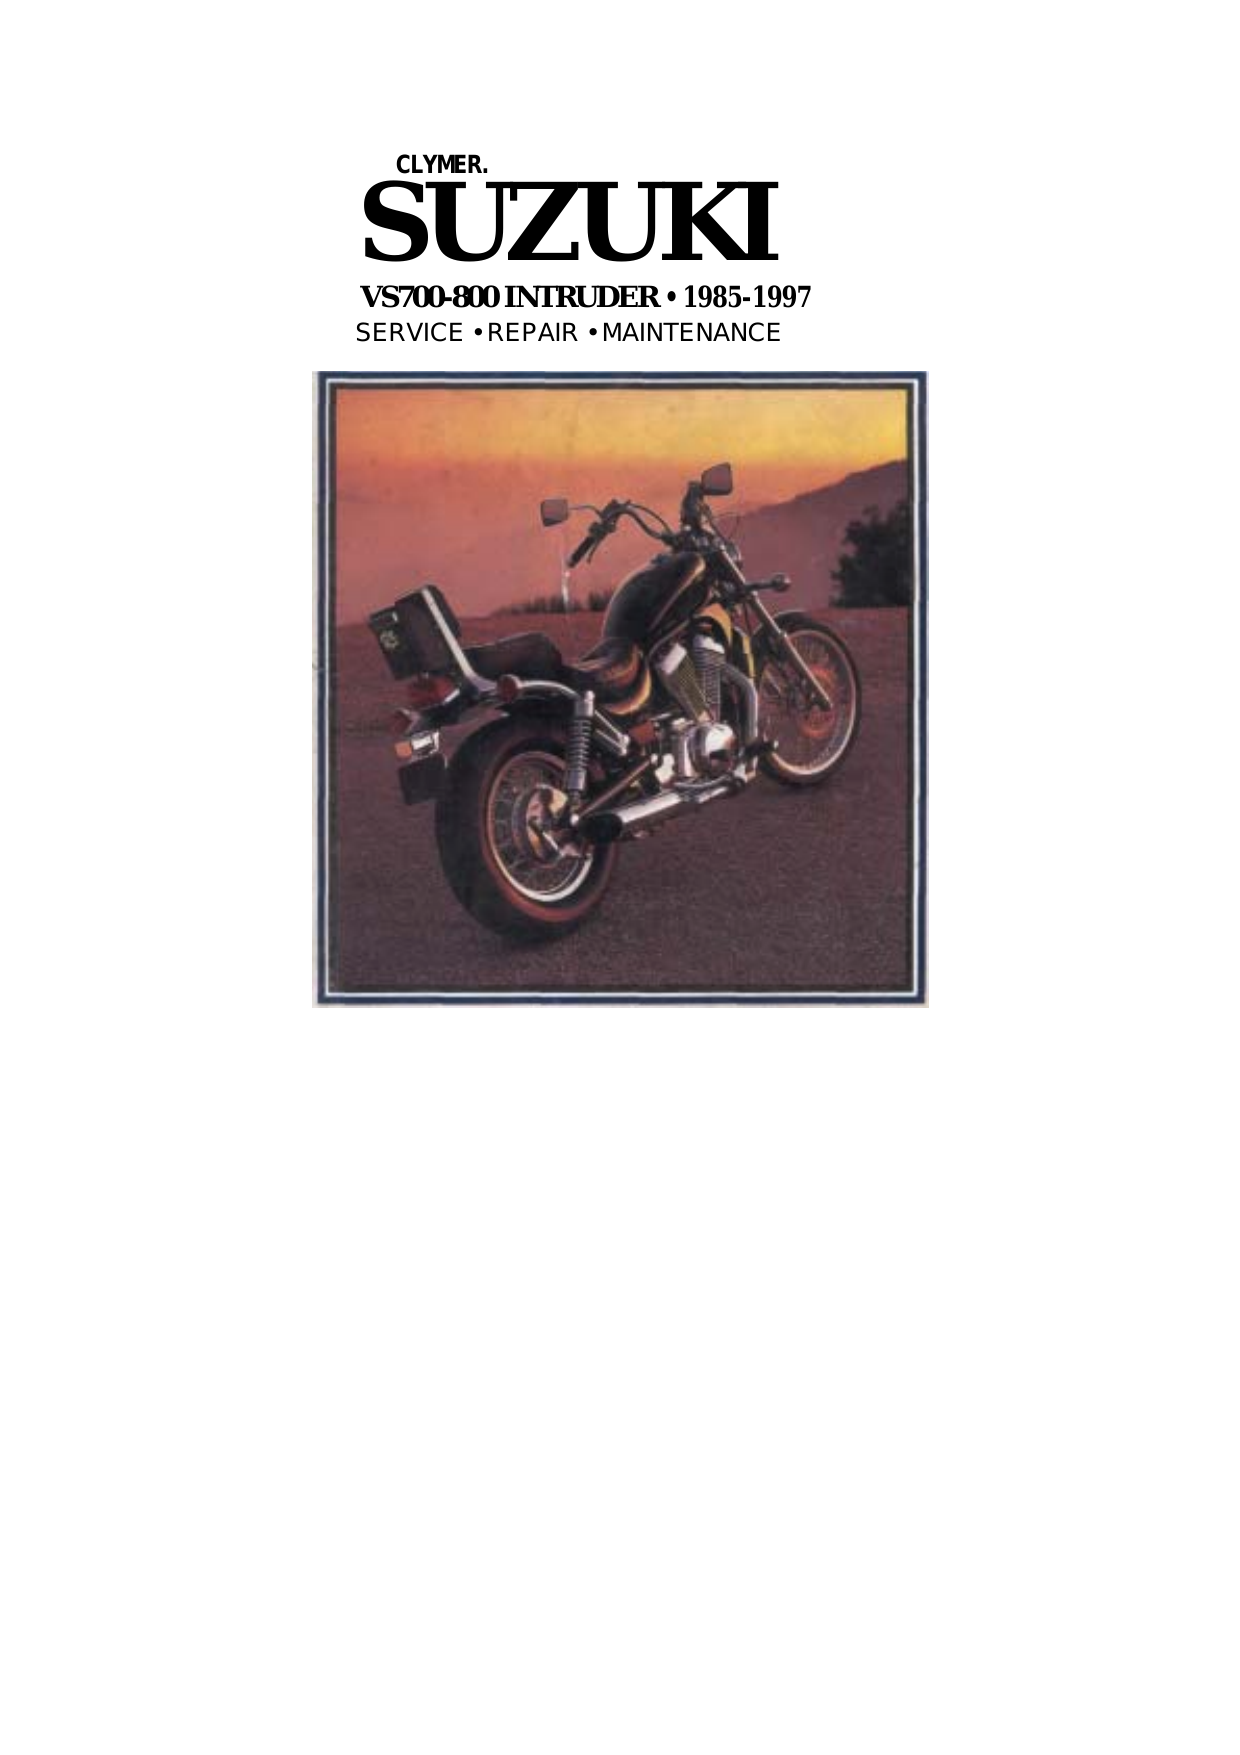 1985-1997 Suzuki VS700, VS800 Intruder repair and service manual Preview image 1